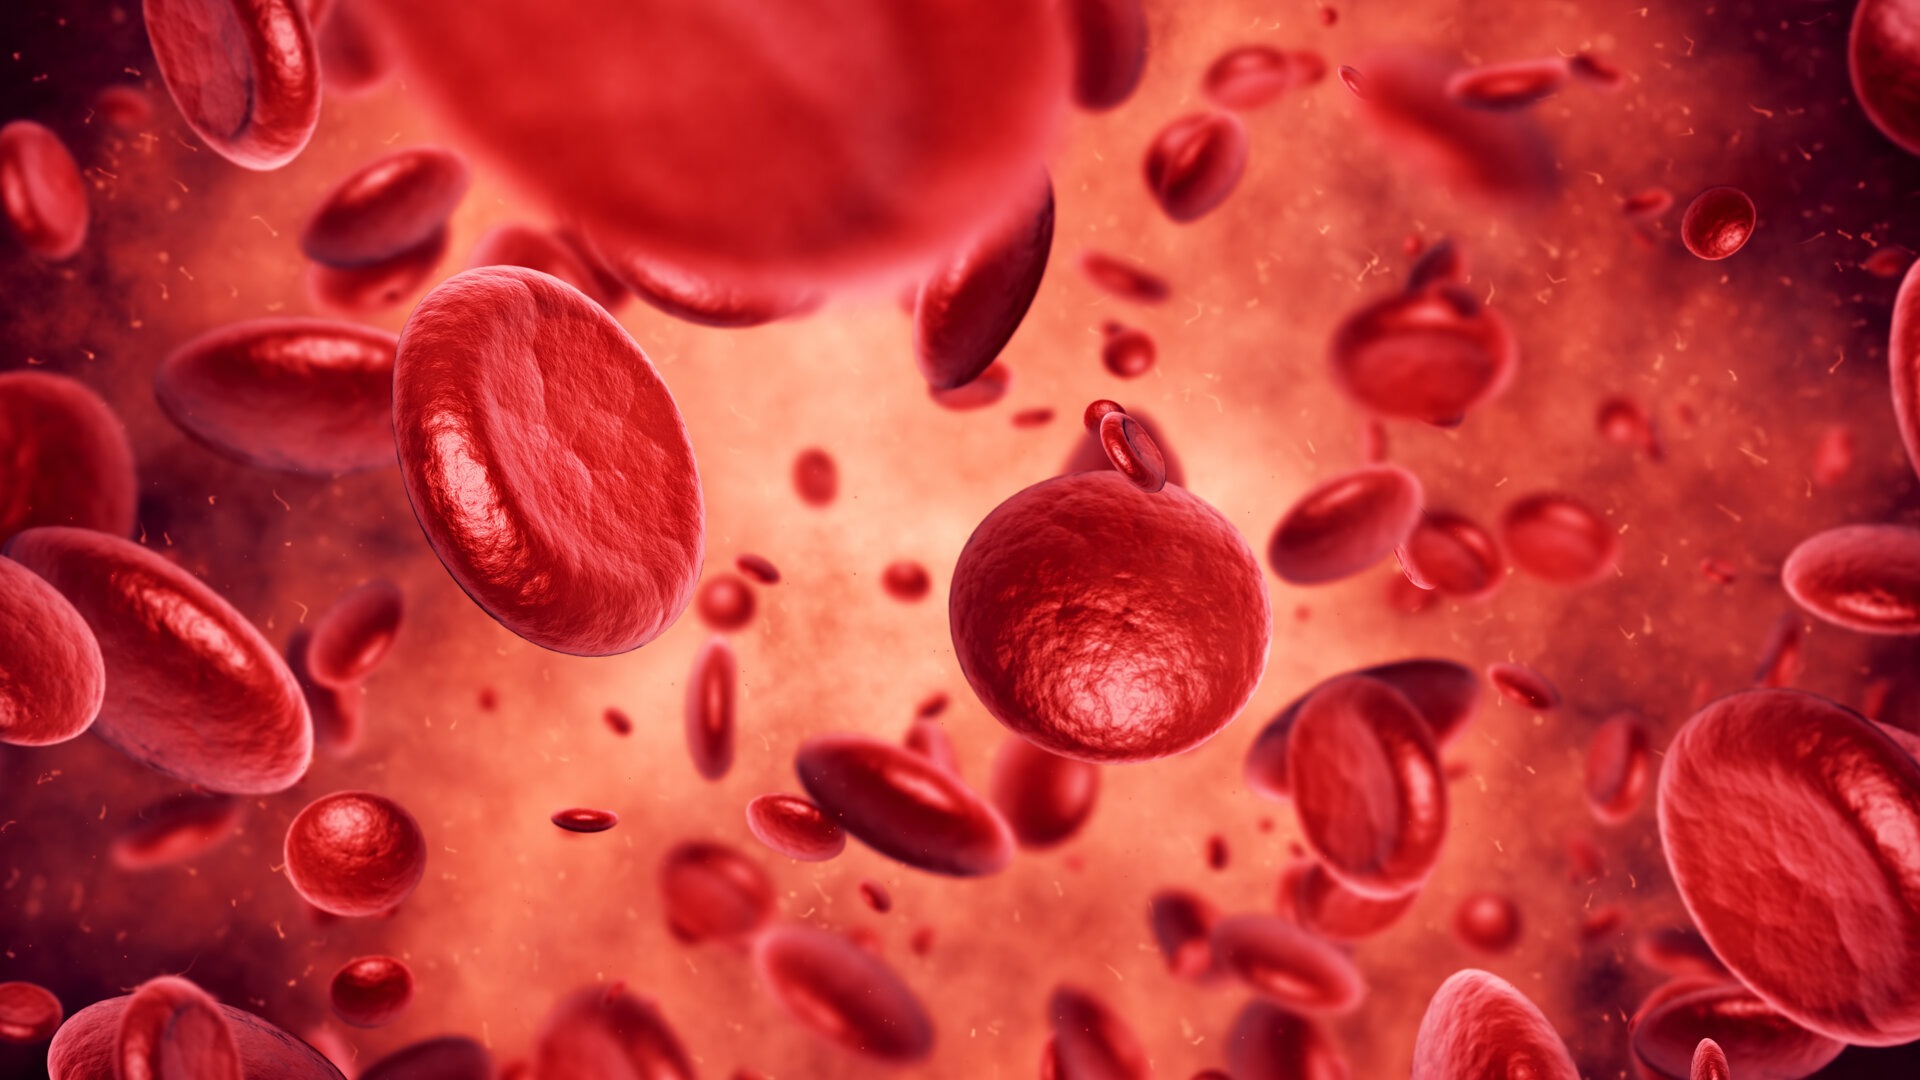 Γραφική απεικόνιση των ερυθρών αιμοσφαιρίων ή ερυθροκυττάρων στο αίμα.